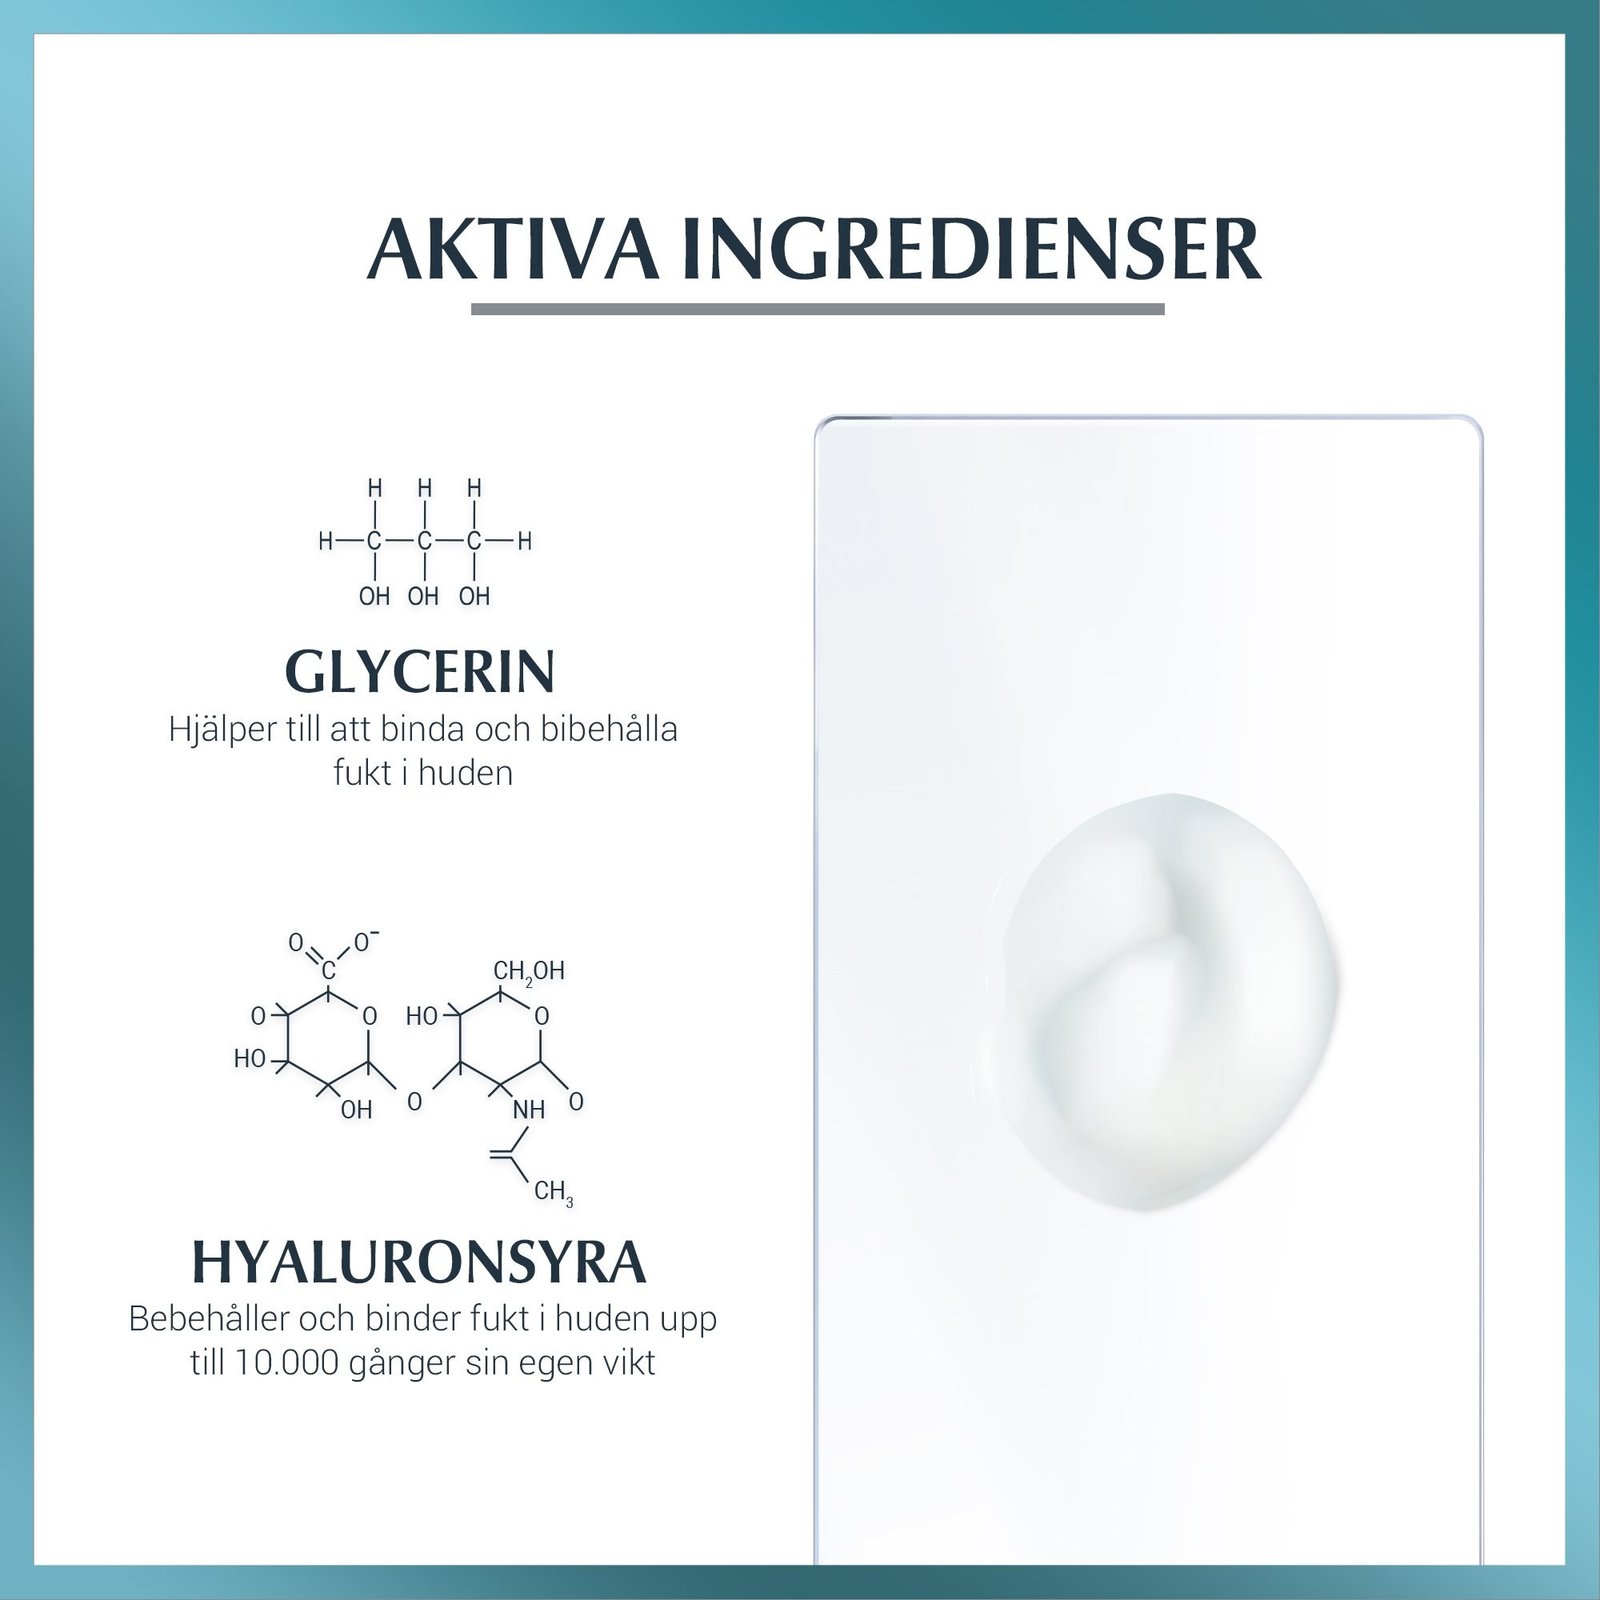 Eucerin Hyaluron-Filler Moisture Booster 30 ml